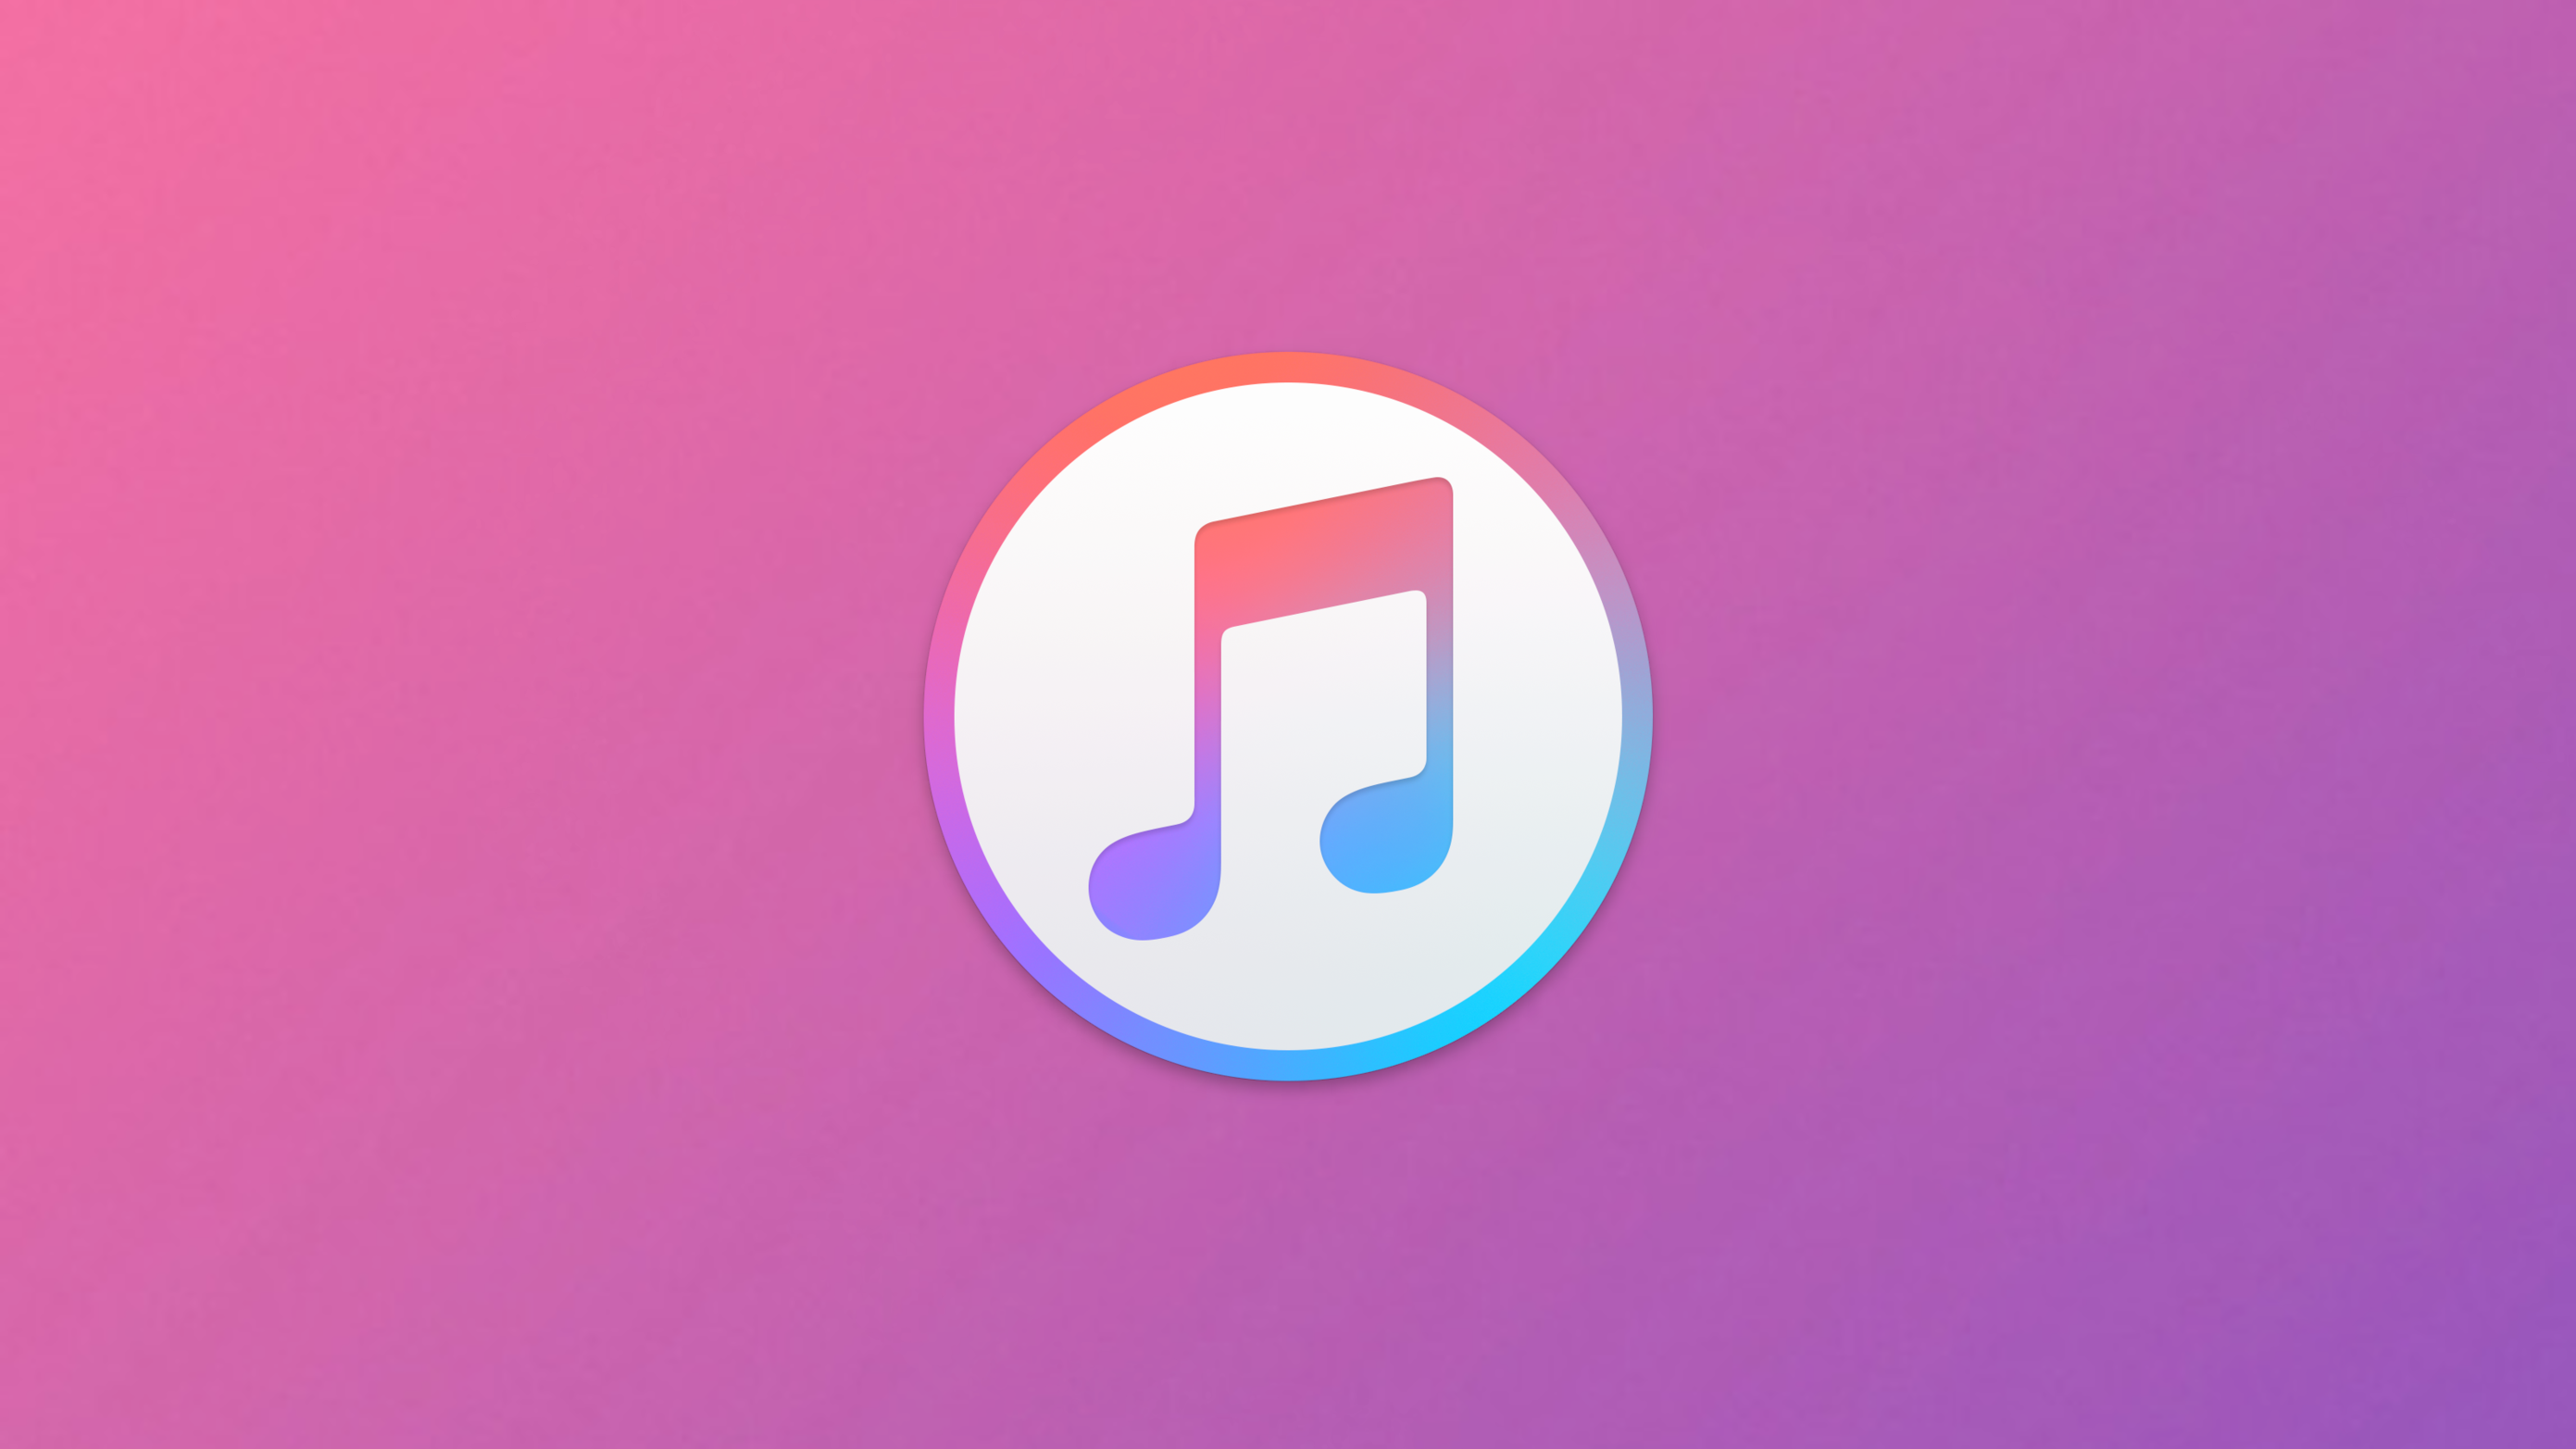 أخبار 21 فبراير 2020
Apple تحصل الموسيقى أيضًا على كلمات متزامنة على Mac